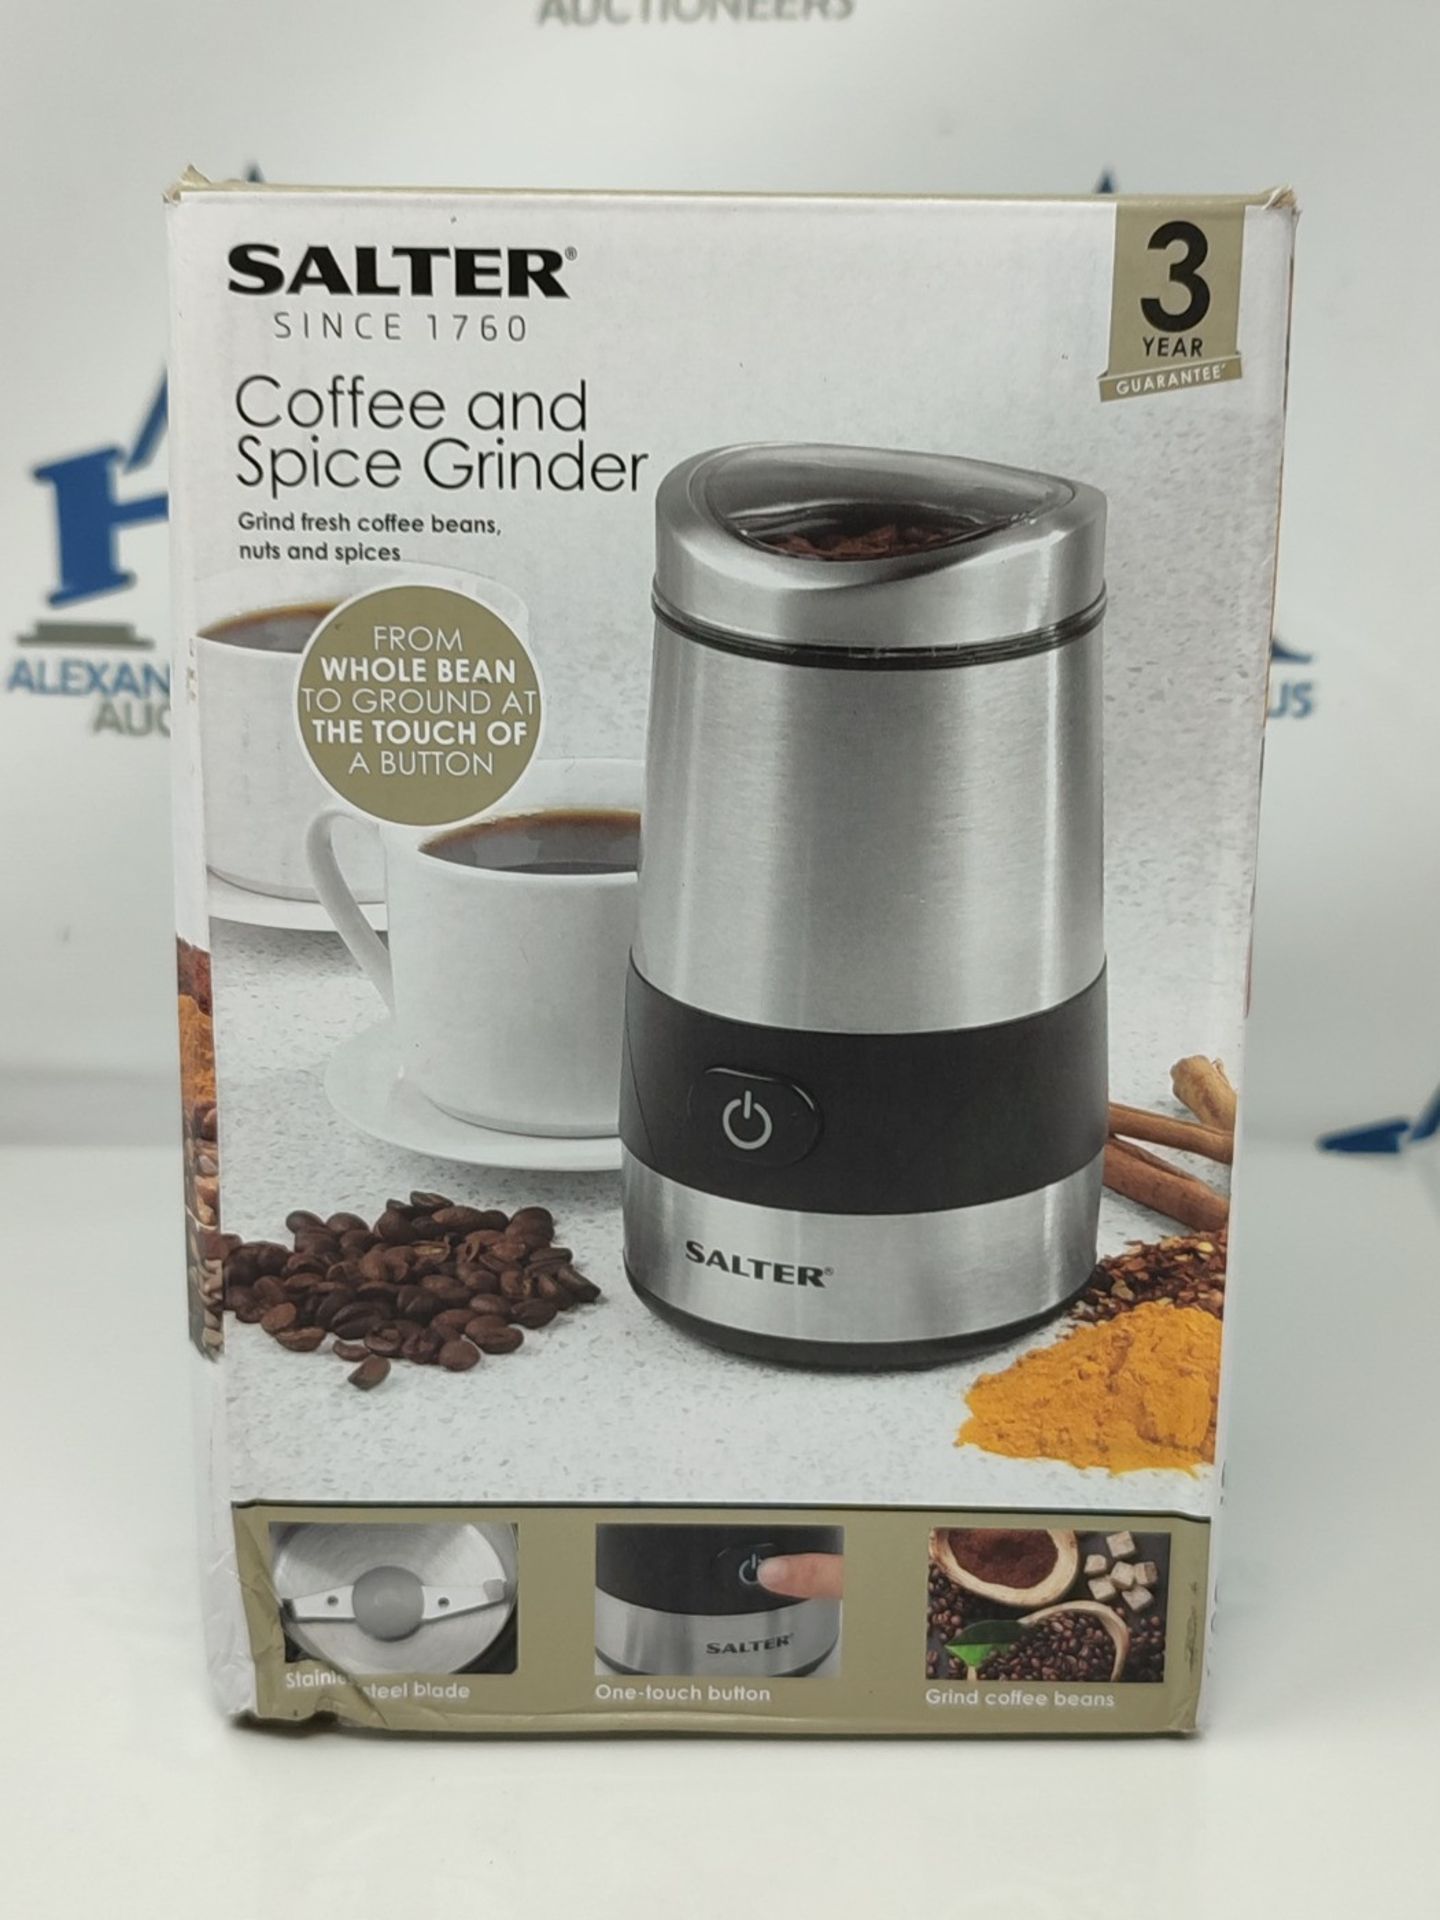 Salter EK2311 Electric Coffee & Spice Grinder  Stainless Steel Blade, 60g Coffee Be - Image 2 of 3